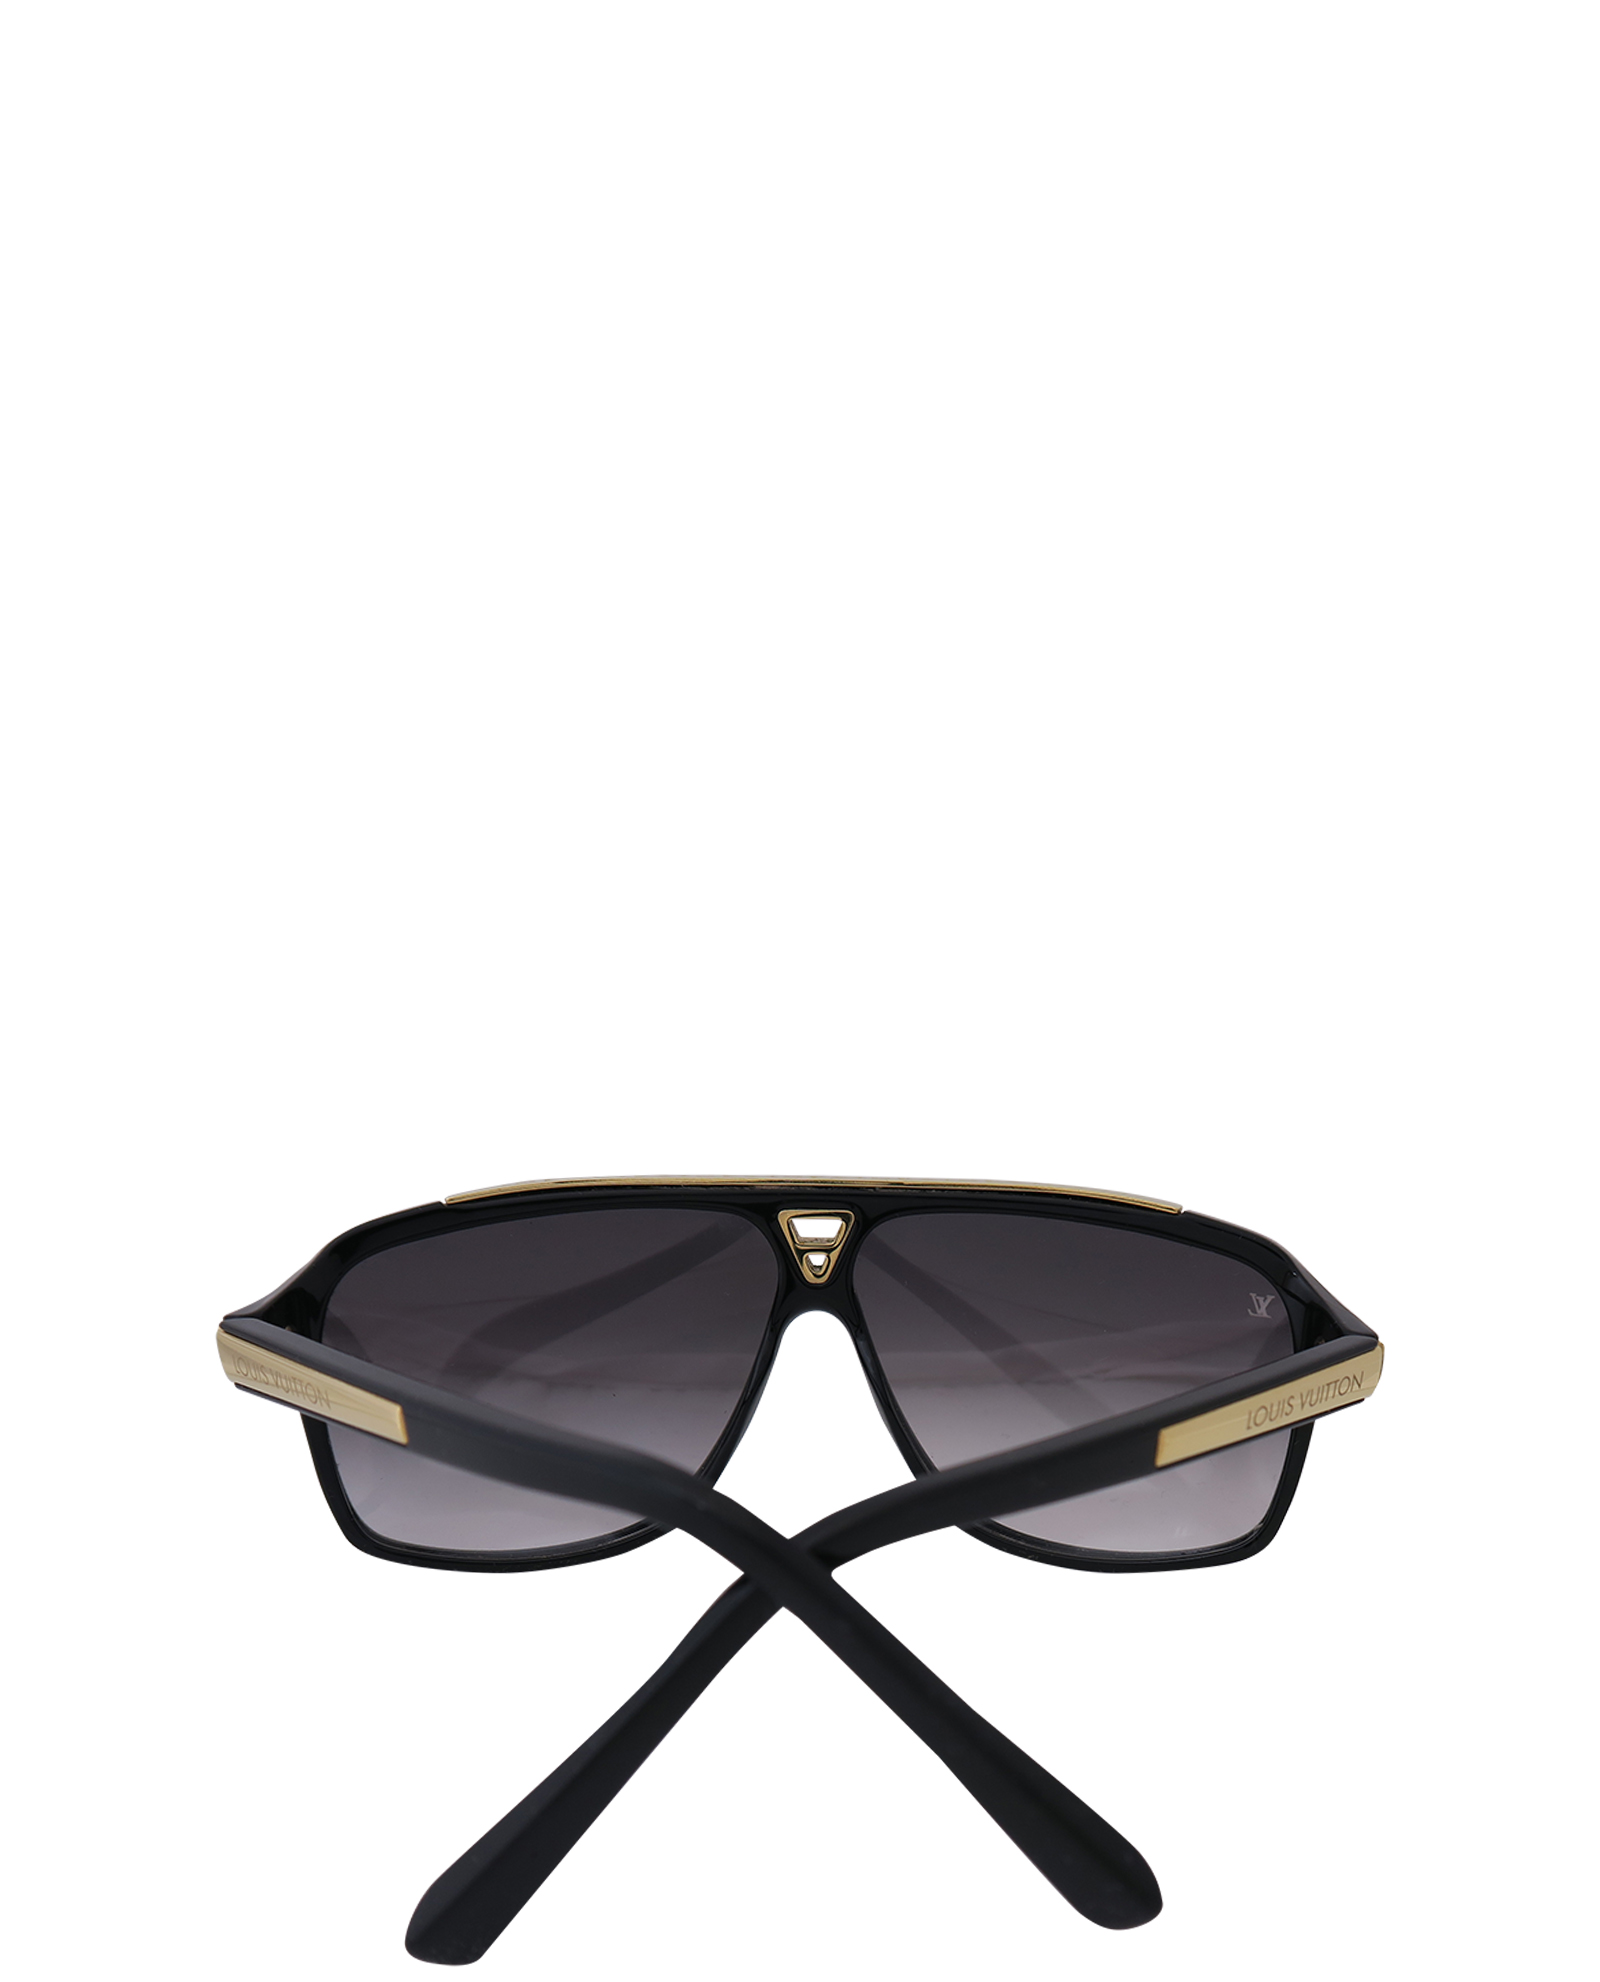 Louis Vuitton 2014 Evidence Millionaire Sunglasses - Black